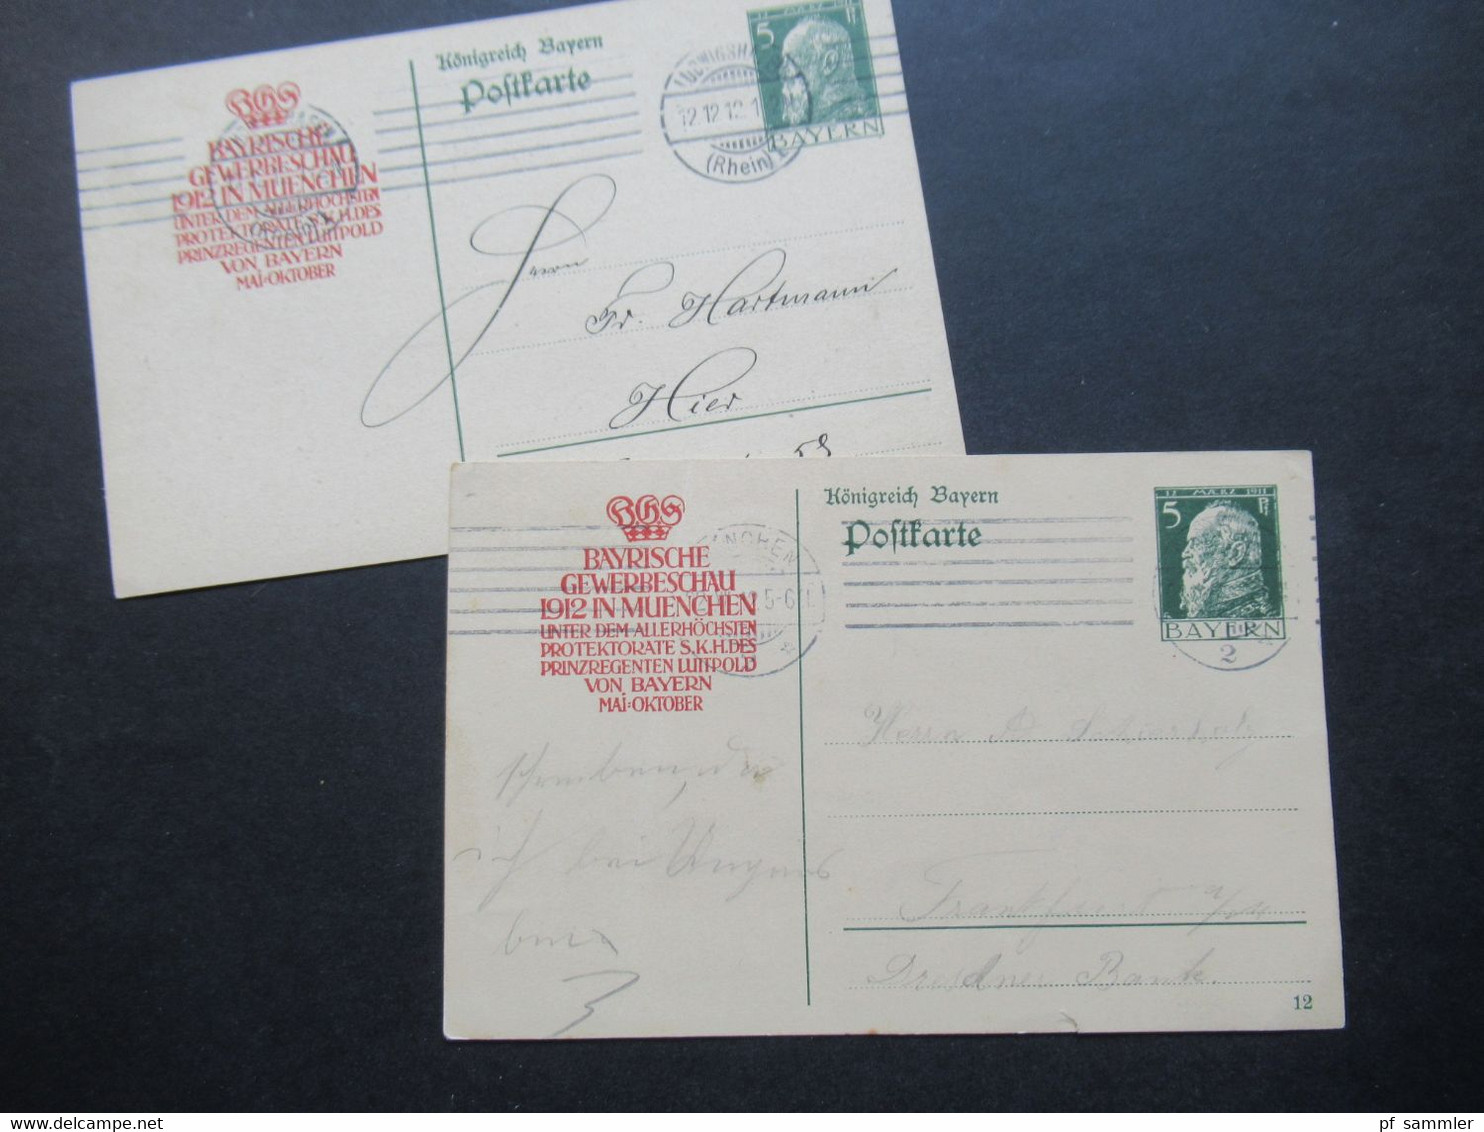 AD Bayern 1912 Postkarte / Ganzsache Mit Zudruck Bayrische Gewerbeschau 1912 In Muenchen Unter Protektorate Luitpold - Ganzsachen